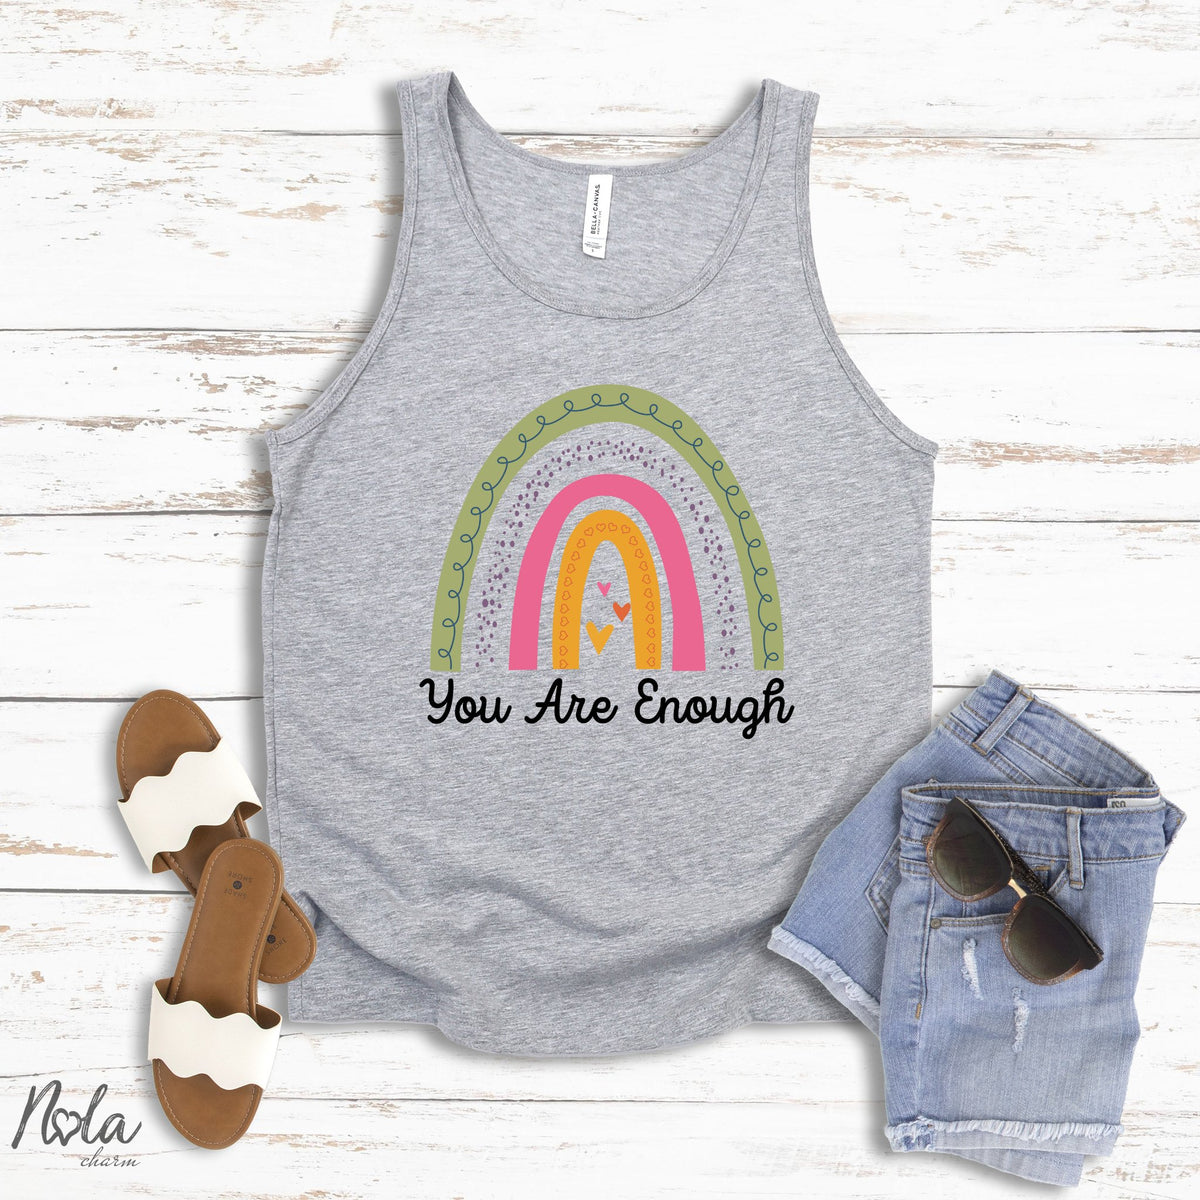 You Are Enough - Nola Charm